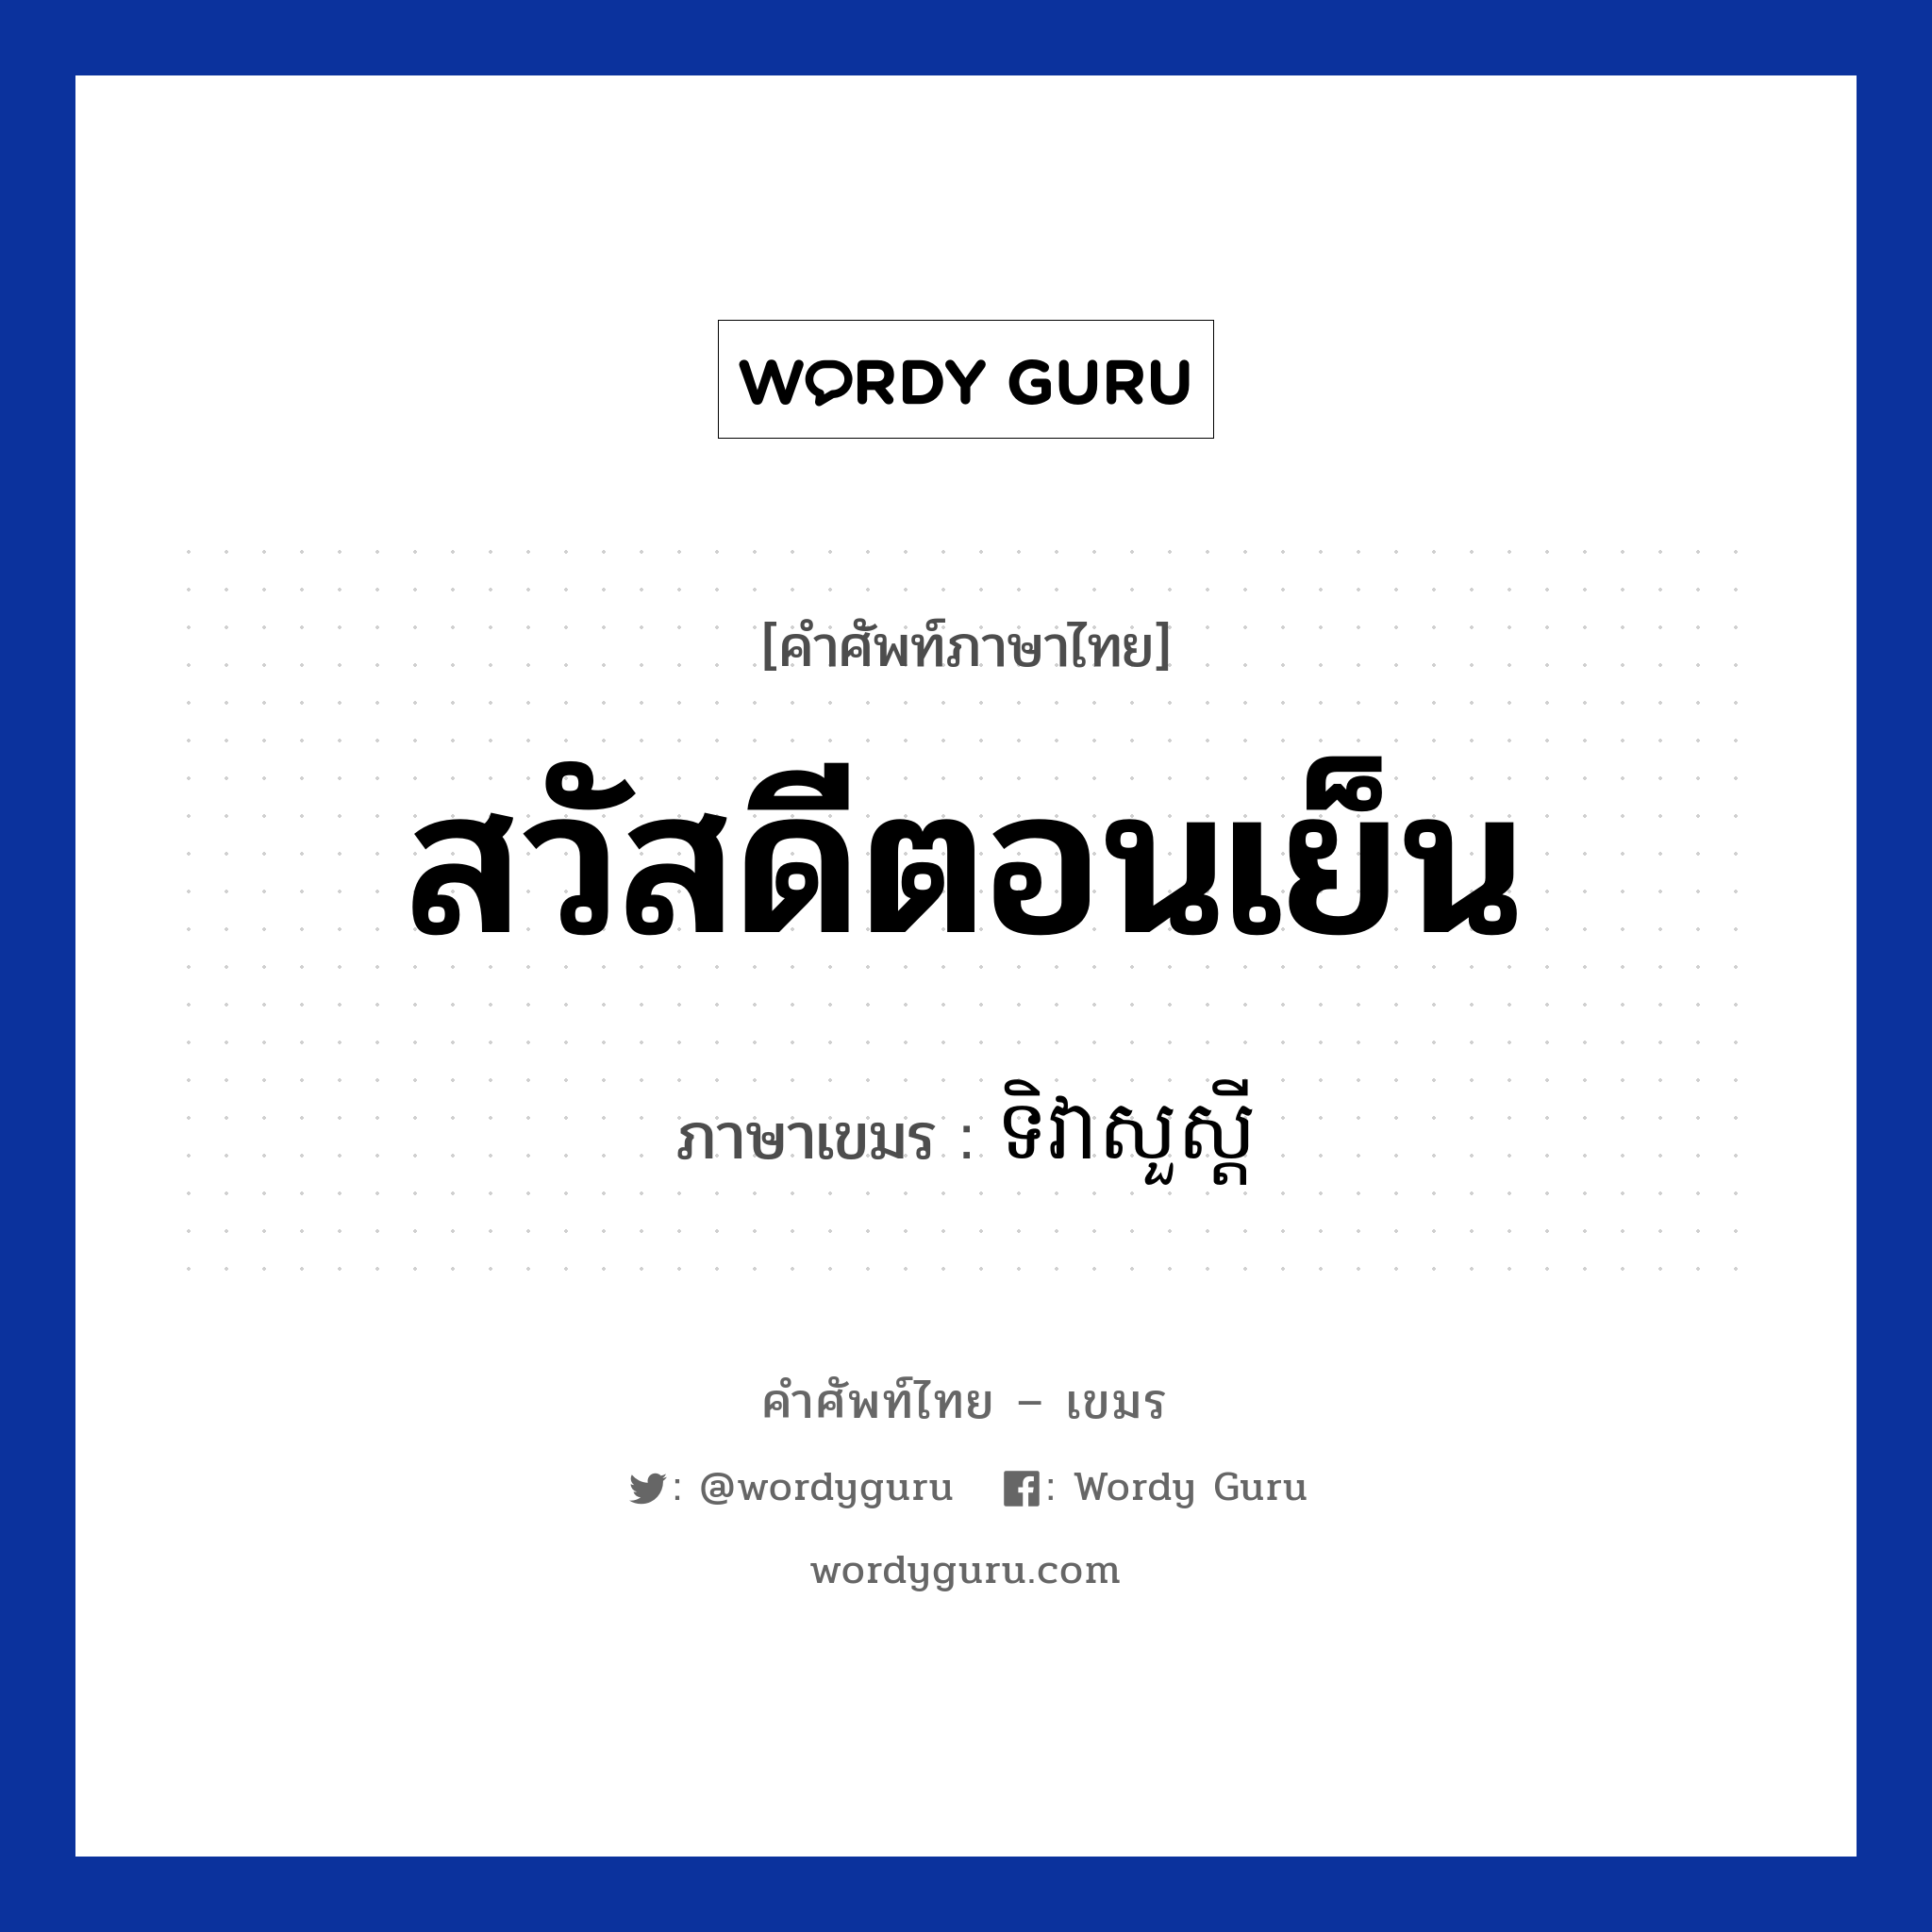 สวัสดีตอนเย็น ภาษาเขมรคืออะไร, คำศัพท์ภาษาไทย - เขมร สวัสดีตอนเย็น ภาษาเขมร ទិវាសួស្ដី หมวด ทักทาย Tivea suo sdei หมวด ทักทาย